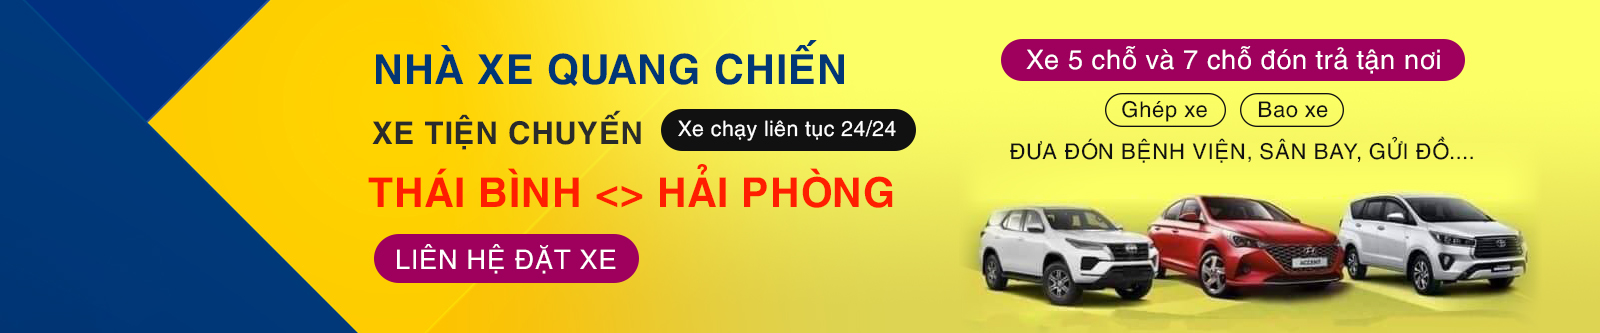 Nhà xe Quang Chiến tuyến Thái Bình - Hà Nội